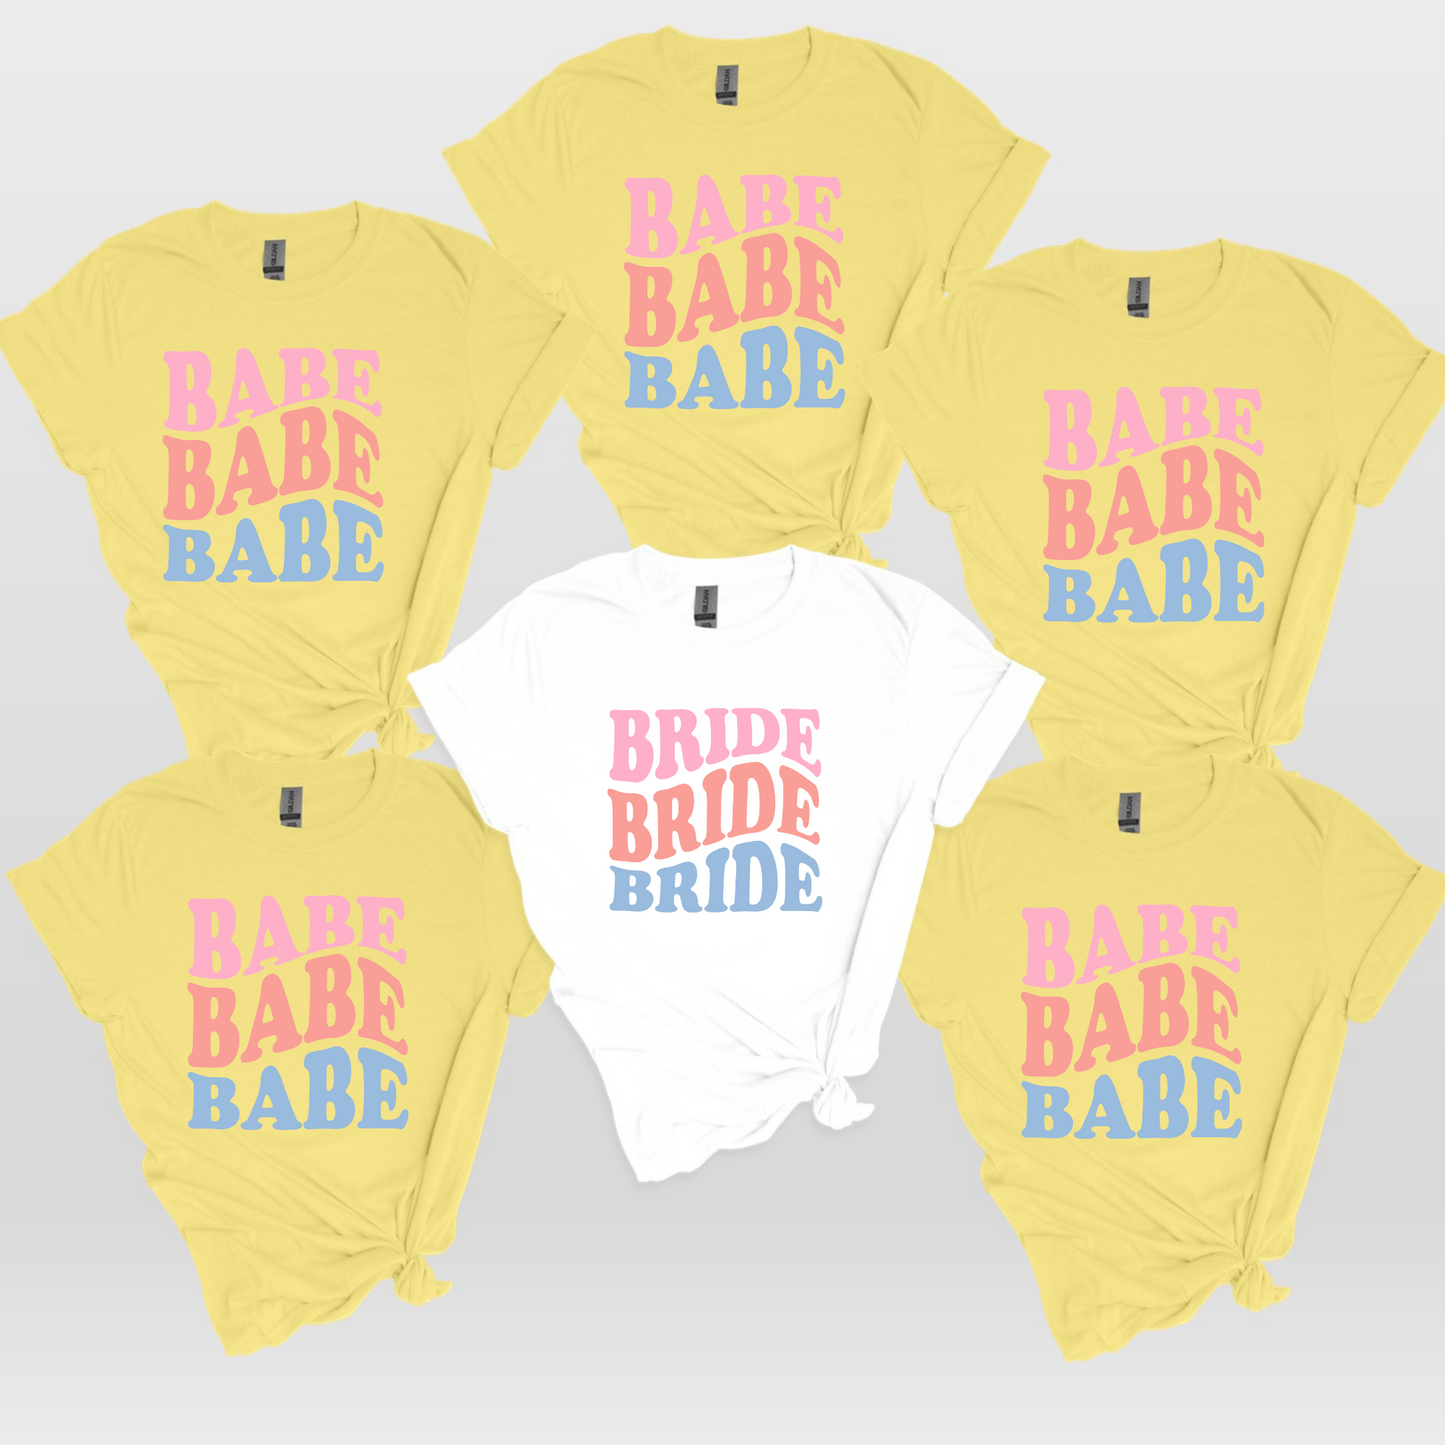 Bride/Babe - Fun, Soft Bachelorette Shirts